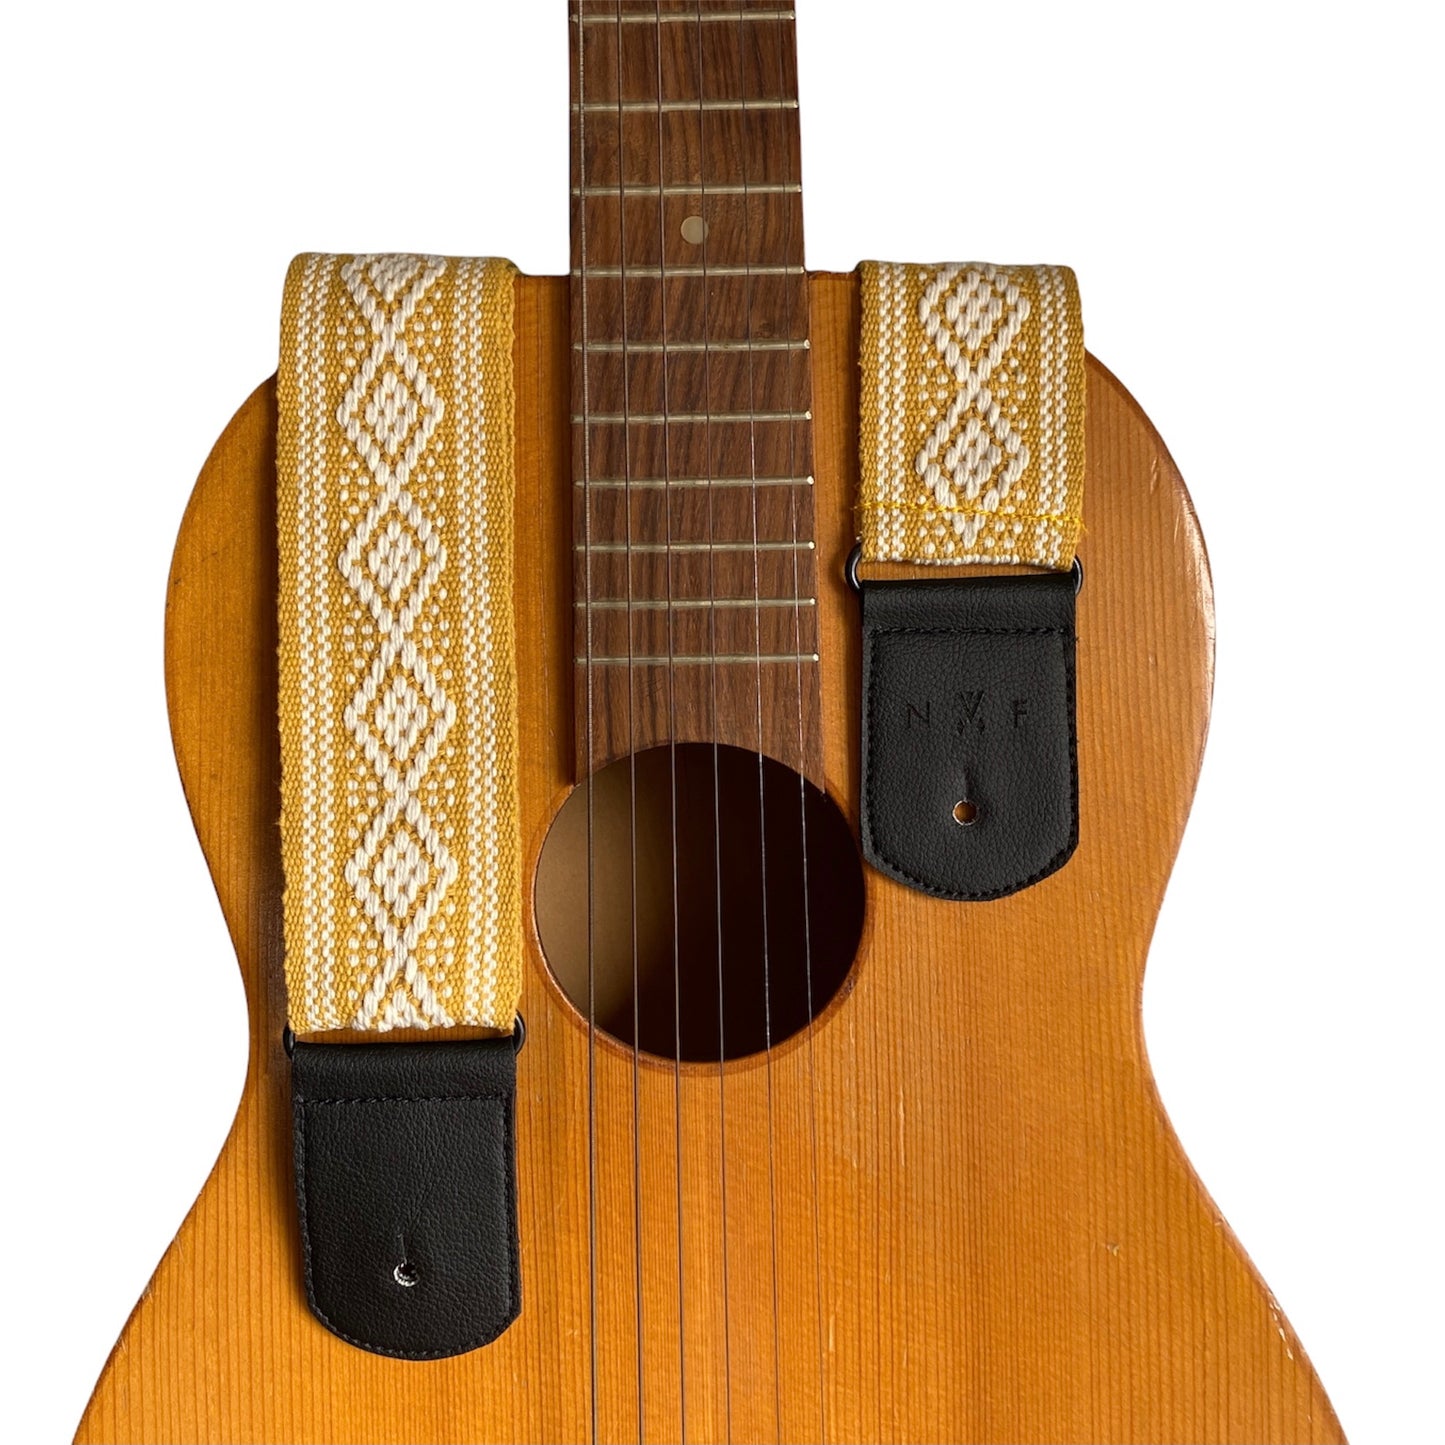 Gitarrengurt Handgemacht Bunt Vintage Vegan Ethno Handmade Kaktusleder Gelb Mexiko